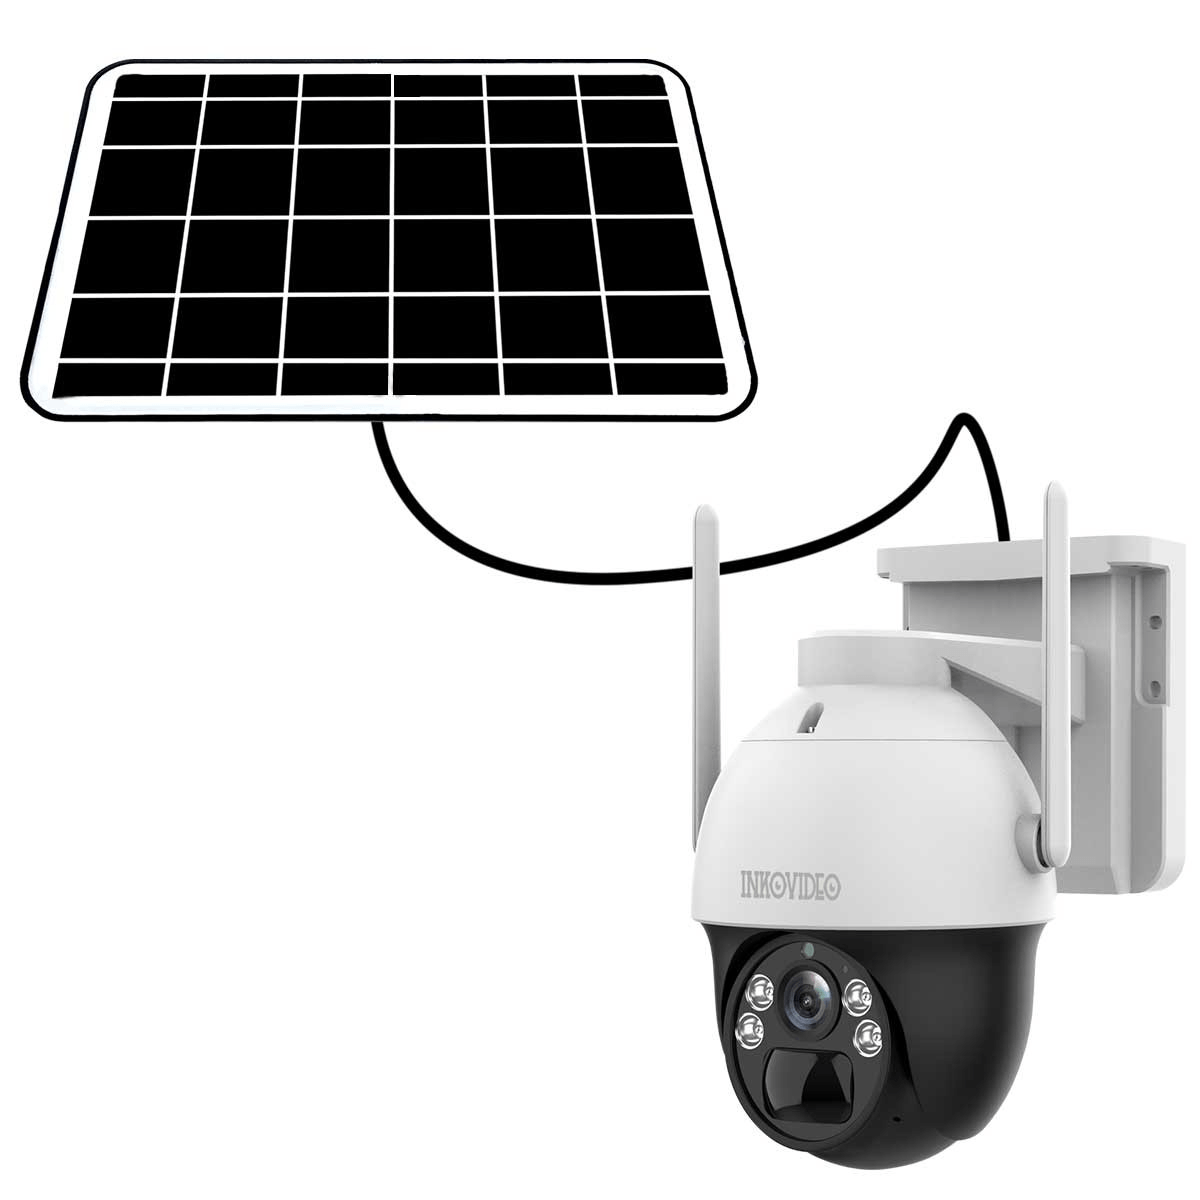 4G Überwachungskamera dreh- und schwenkbar mit Akku, inkl. Solarpanel - 100% kabellos - Calitronshop.com